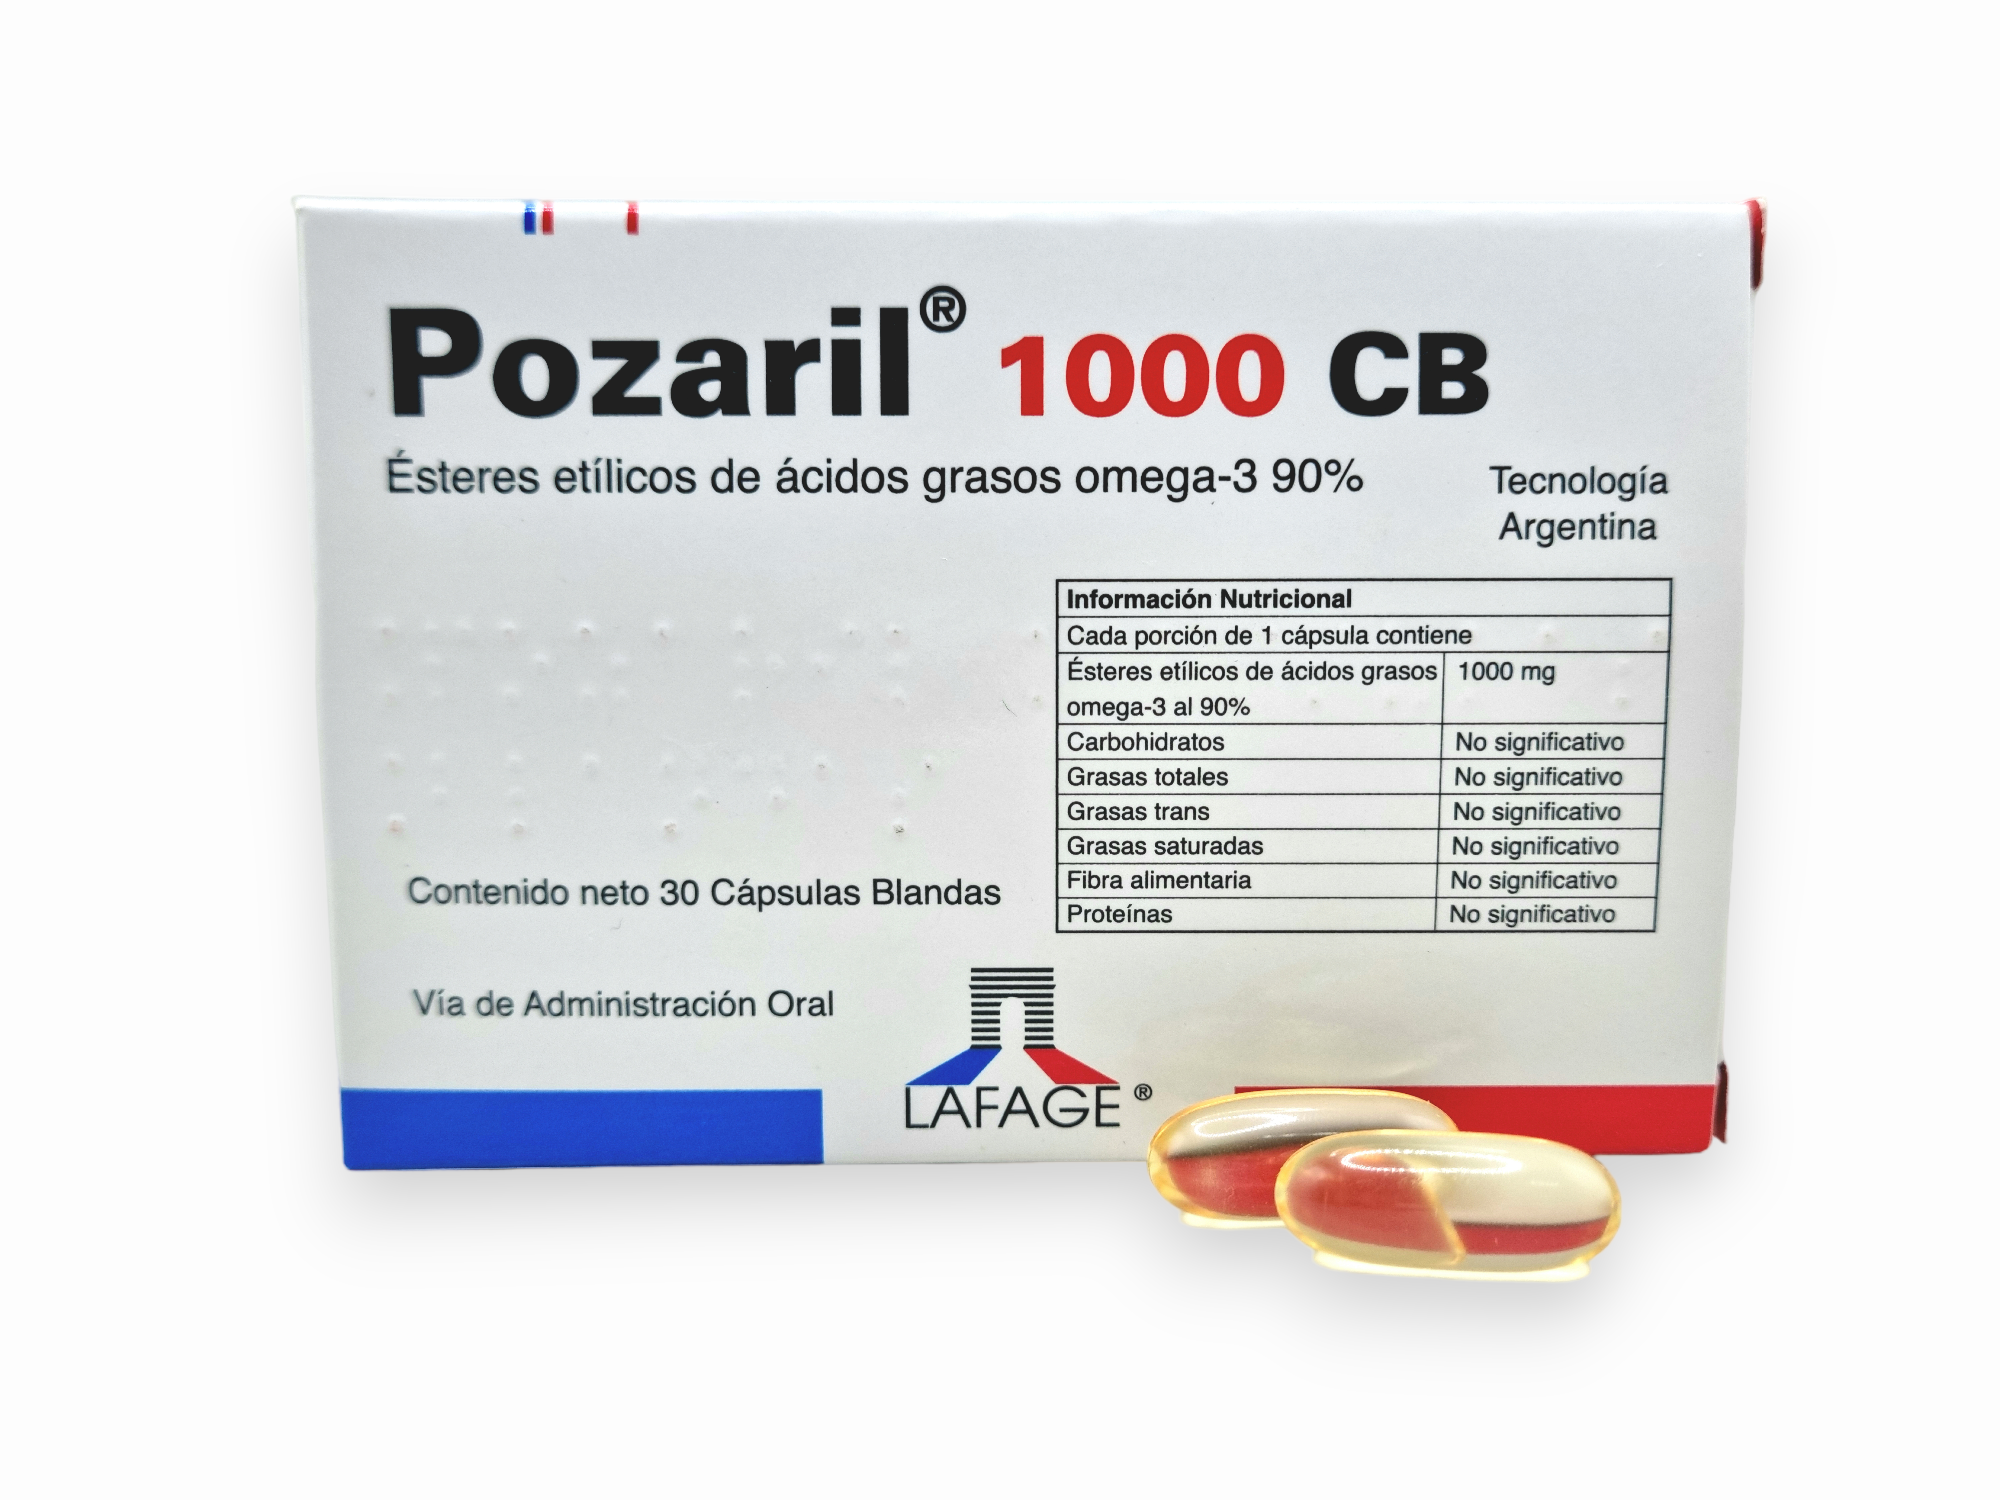 Pozaril® 1,000 CB